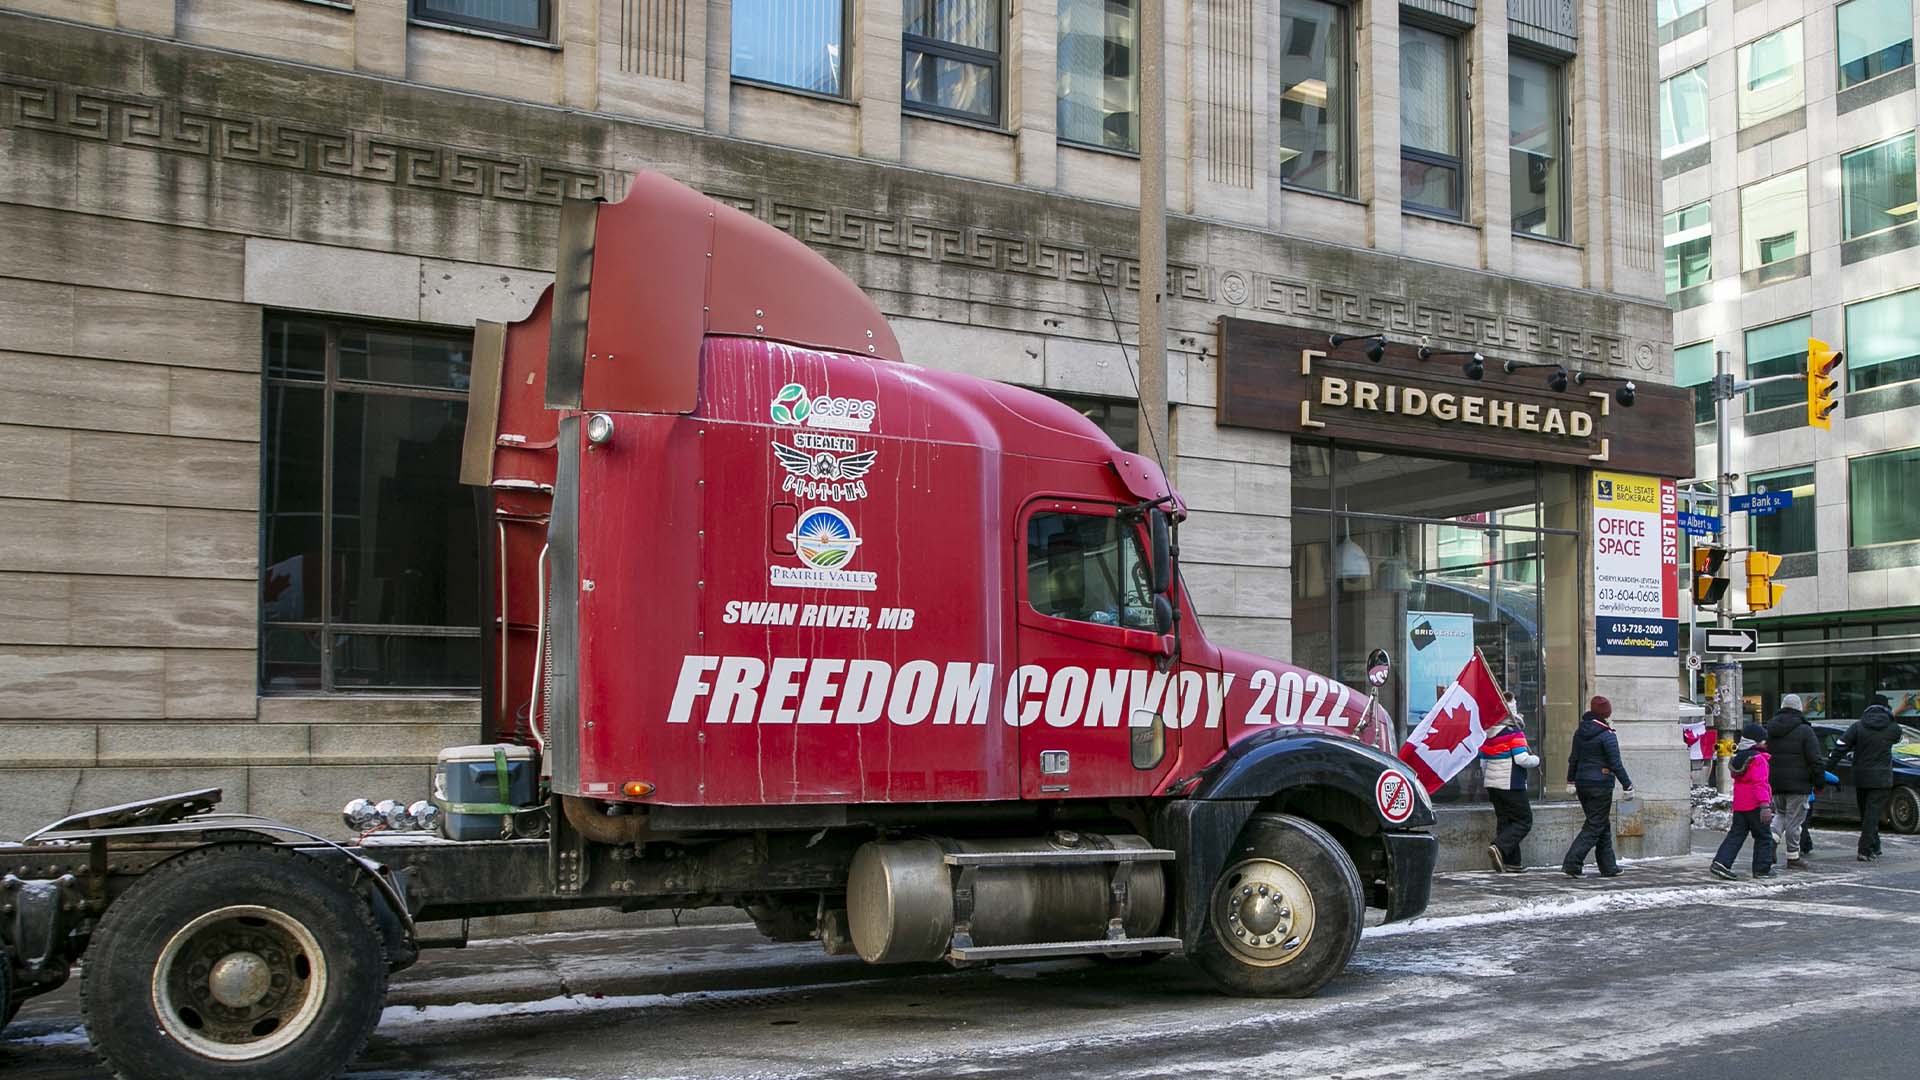 Les mots « Freedom Convoy 2022 » sont visibles sur un camion qui fait partie d'une manifestation contre les restrictions du COVID-19 à Ottawa, Ontario, Canada, le dimanche 13 février 2022.